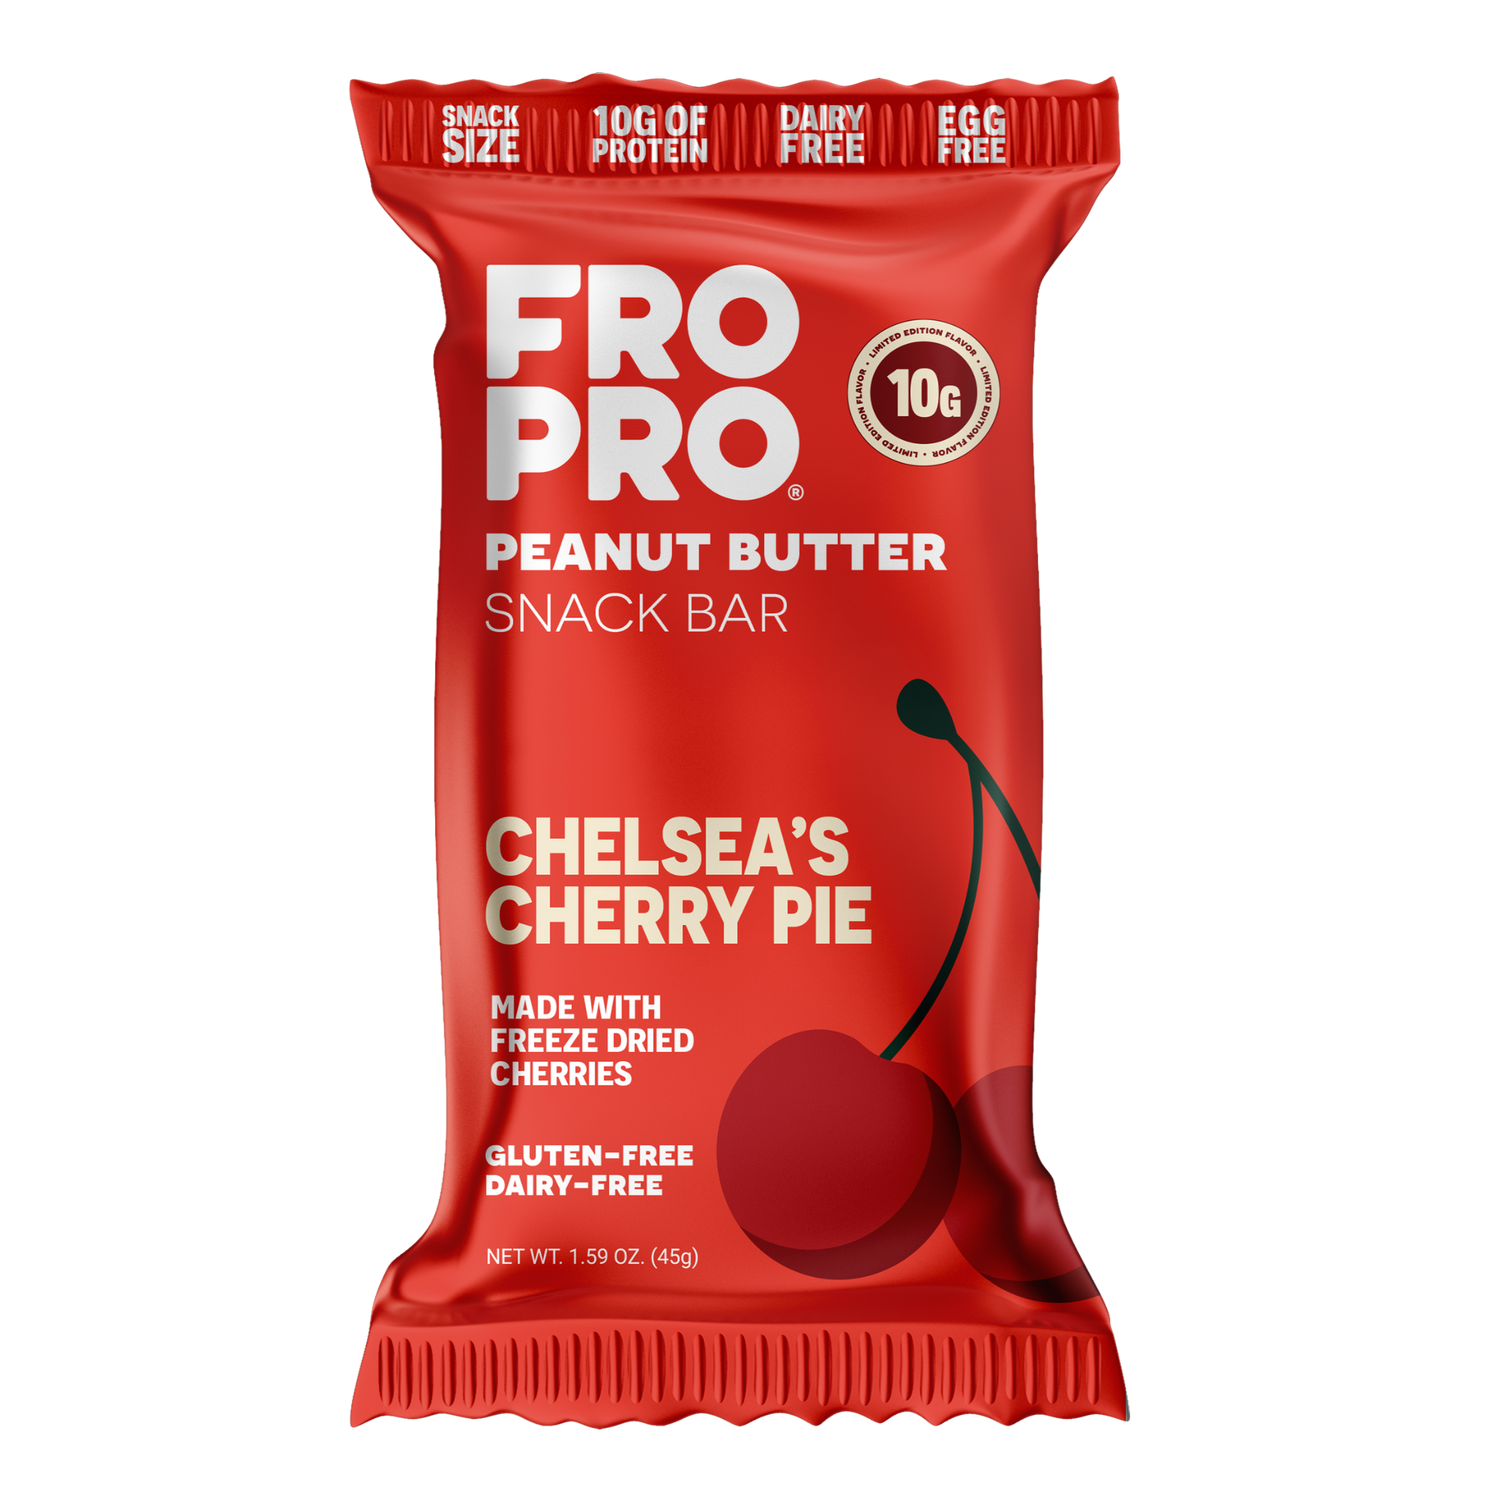 Chelsea's Cherry Pie